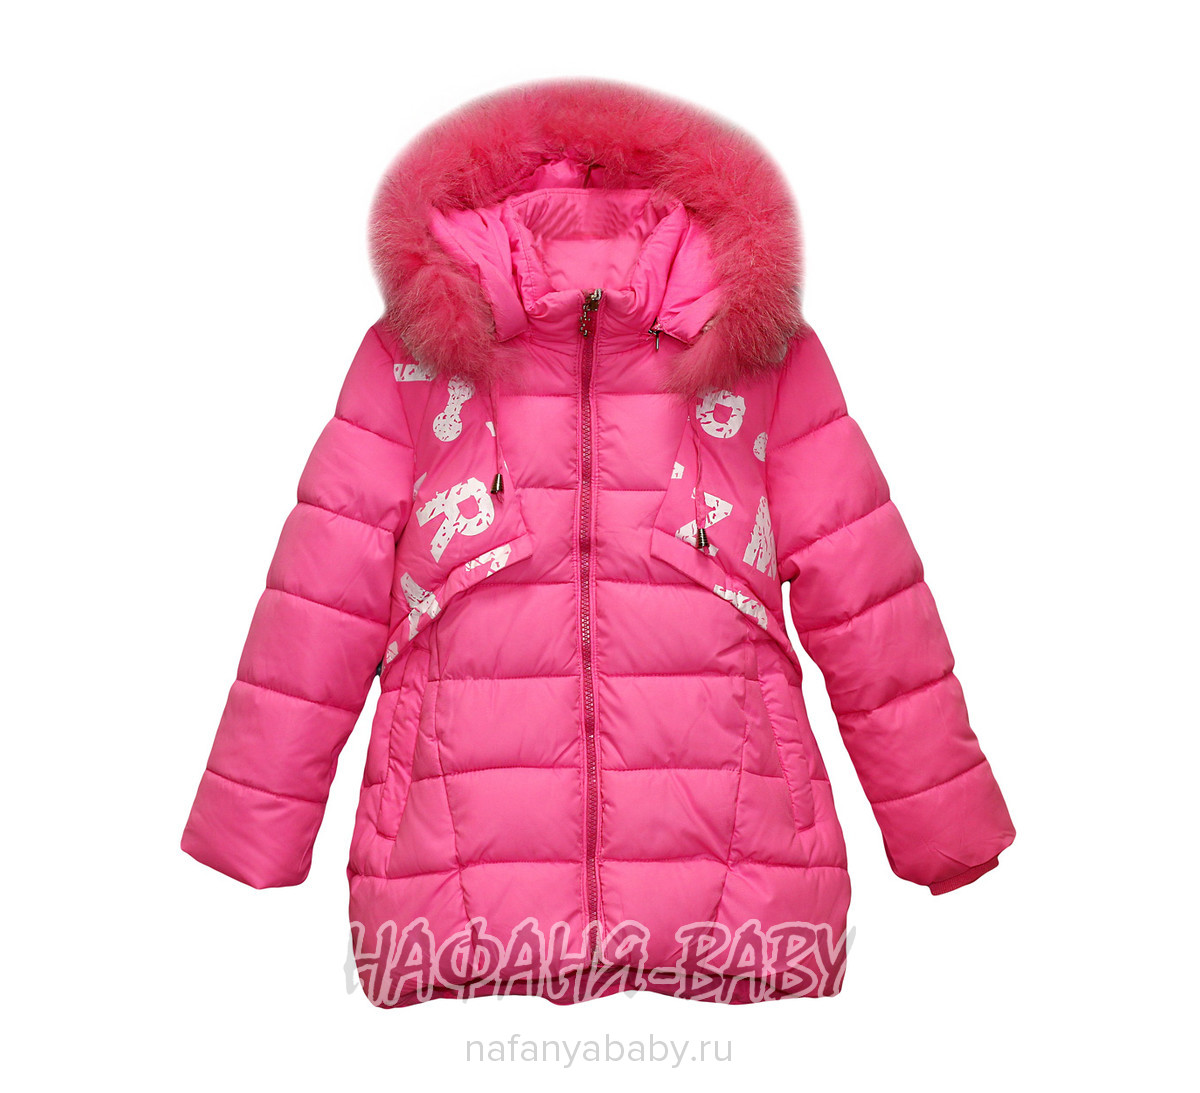 Детская куртка YIXIANG, купить в интернет магазине Нафаня. арт: 566.